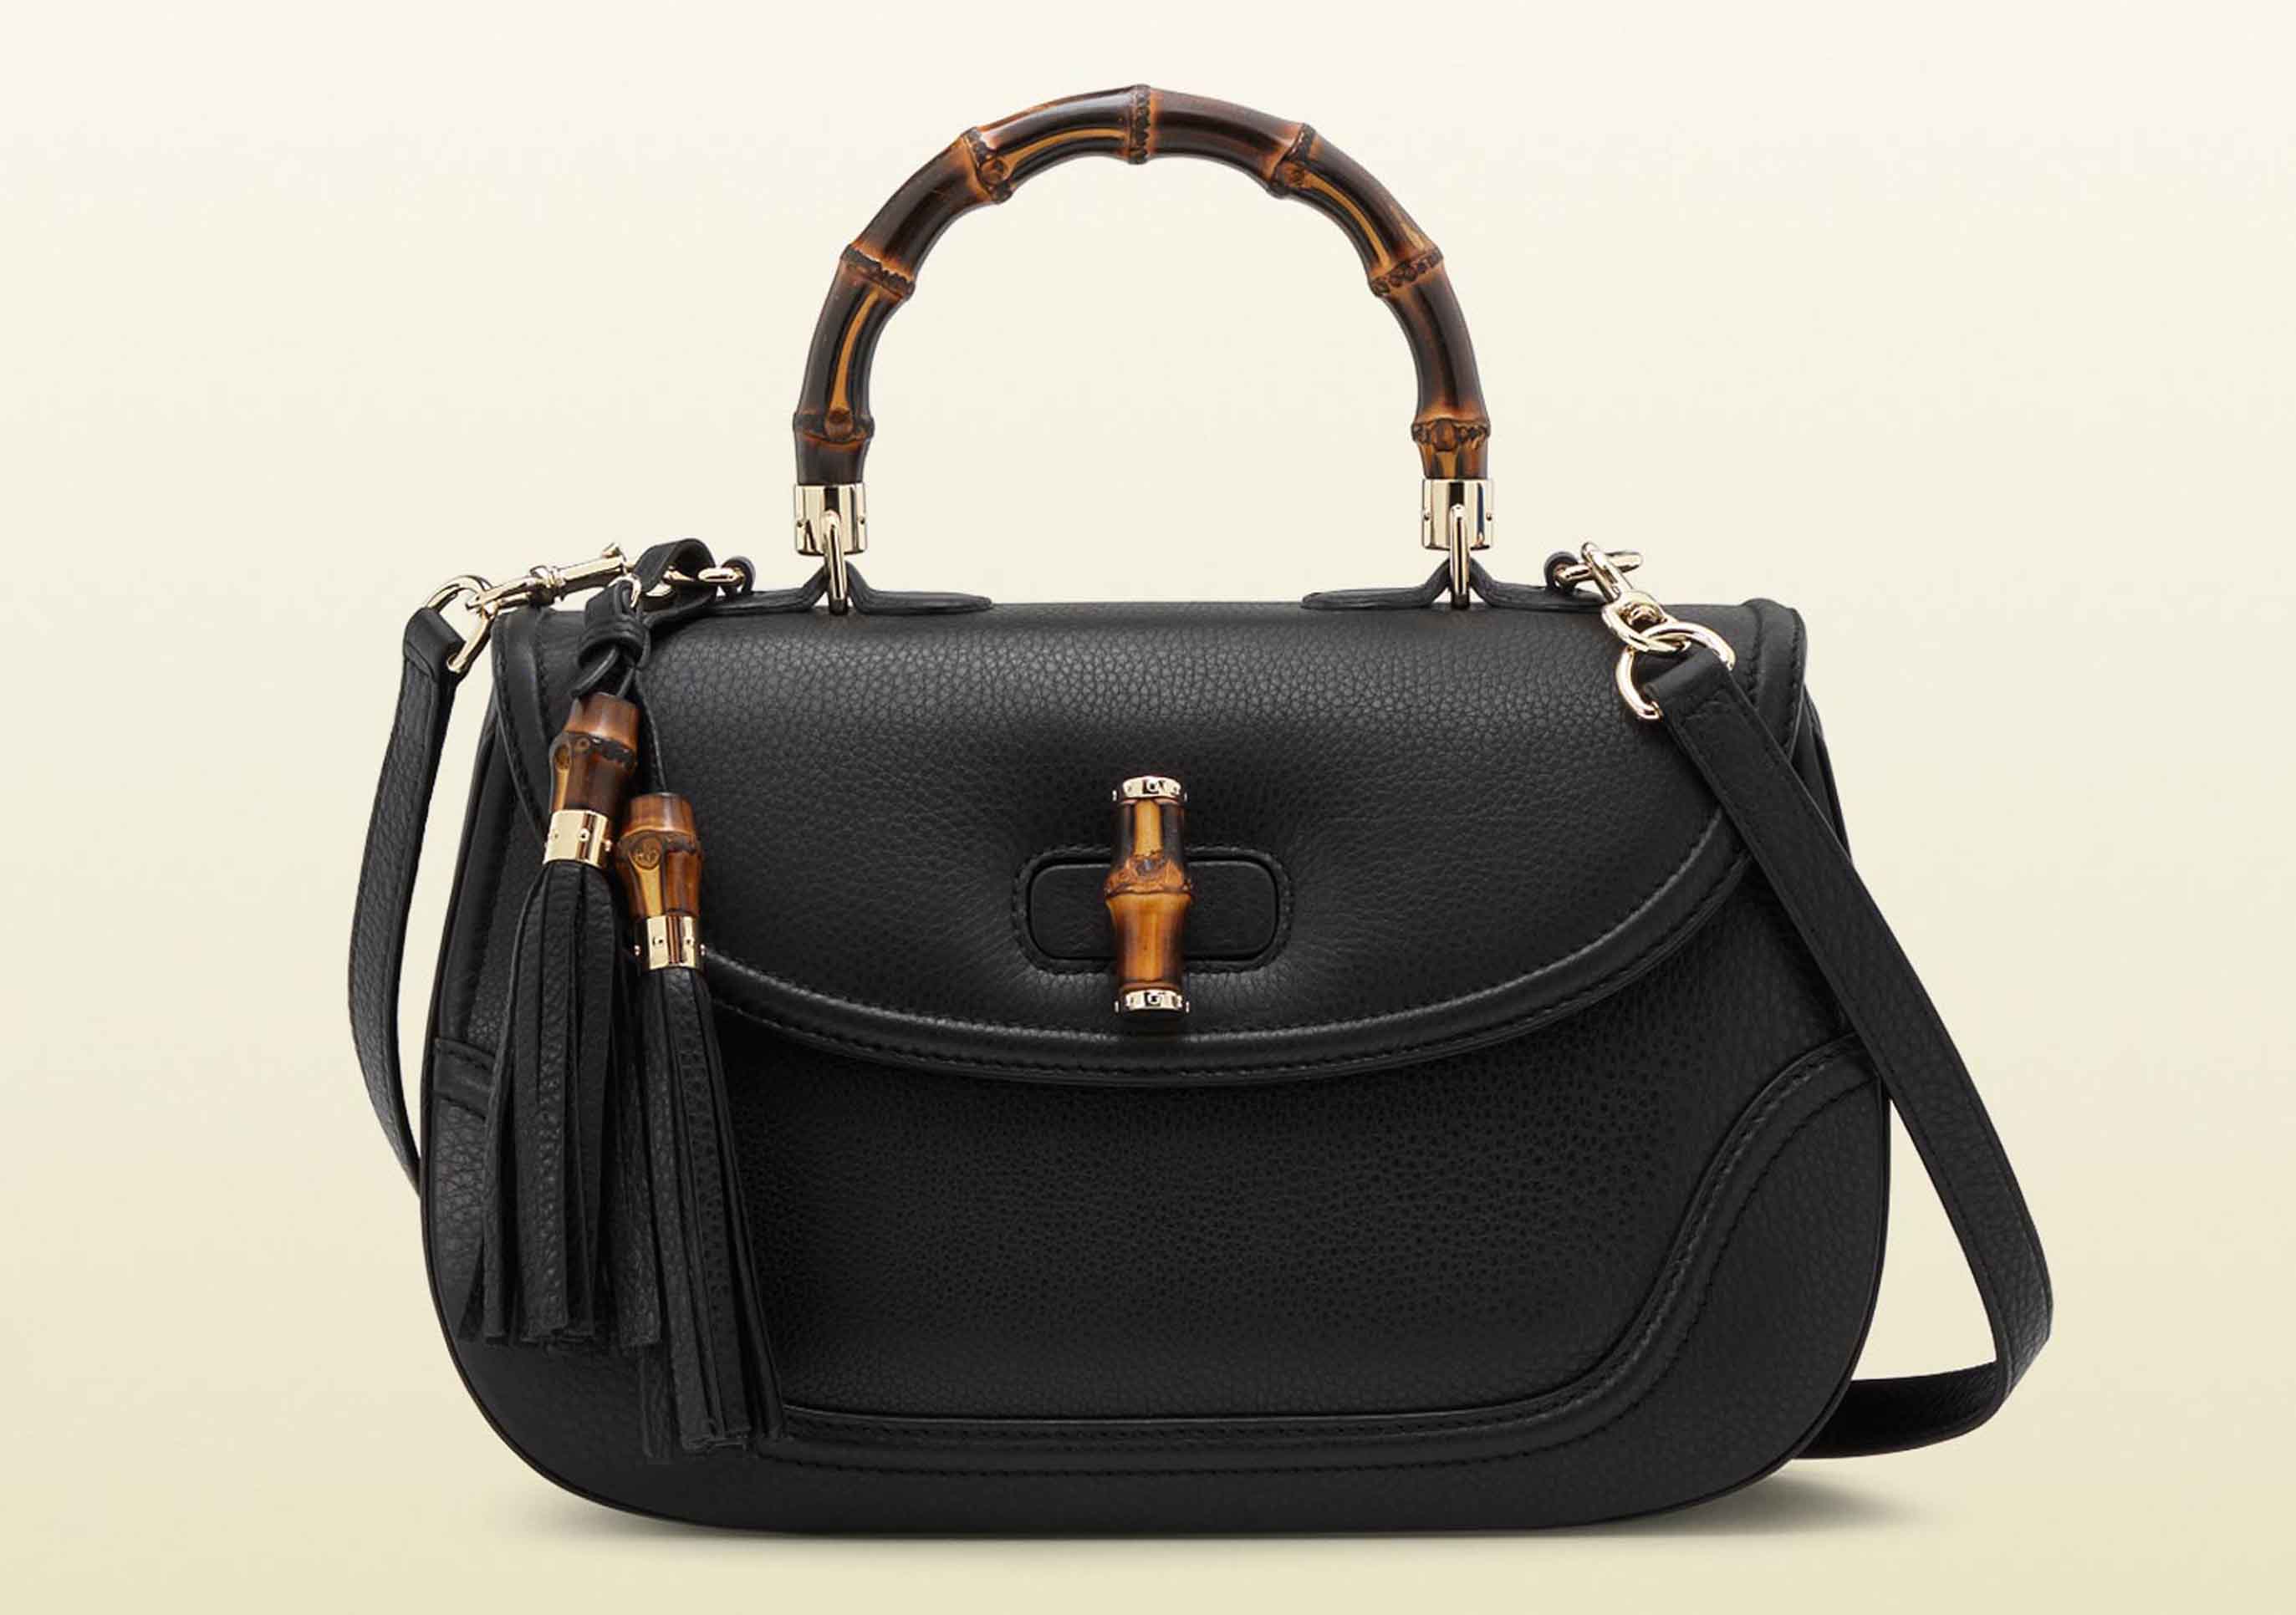 Bag at You - Fashion Blog - Gucci Bamboo Bag